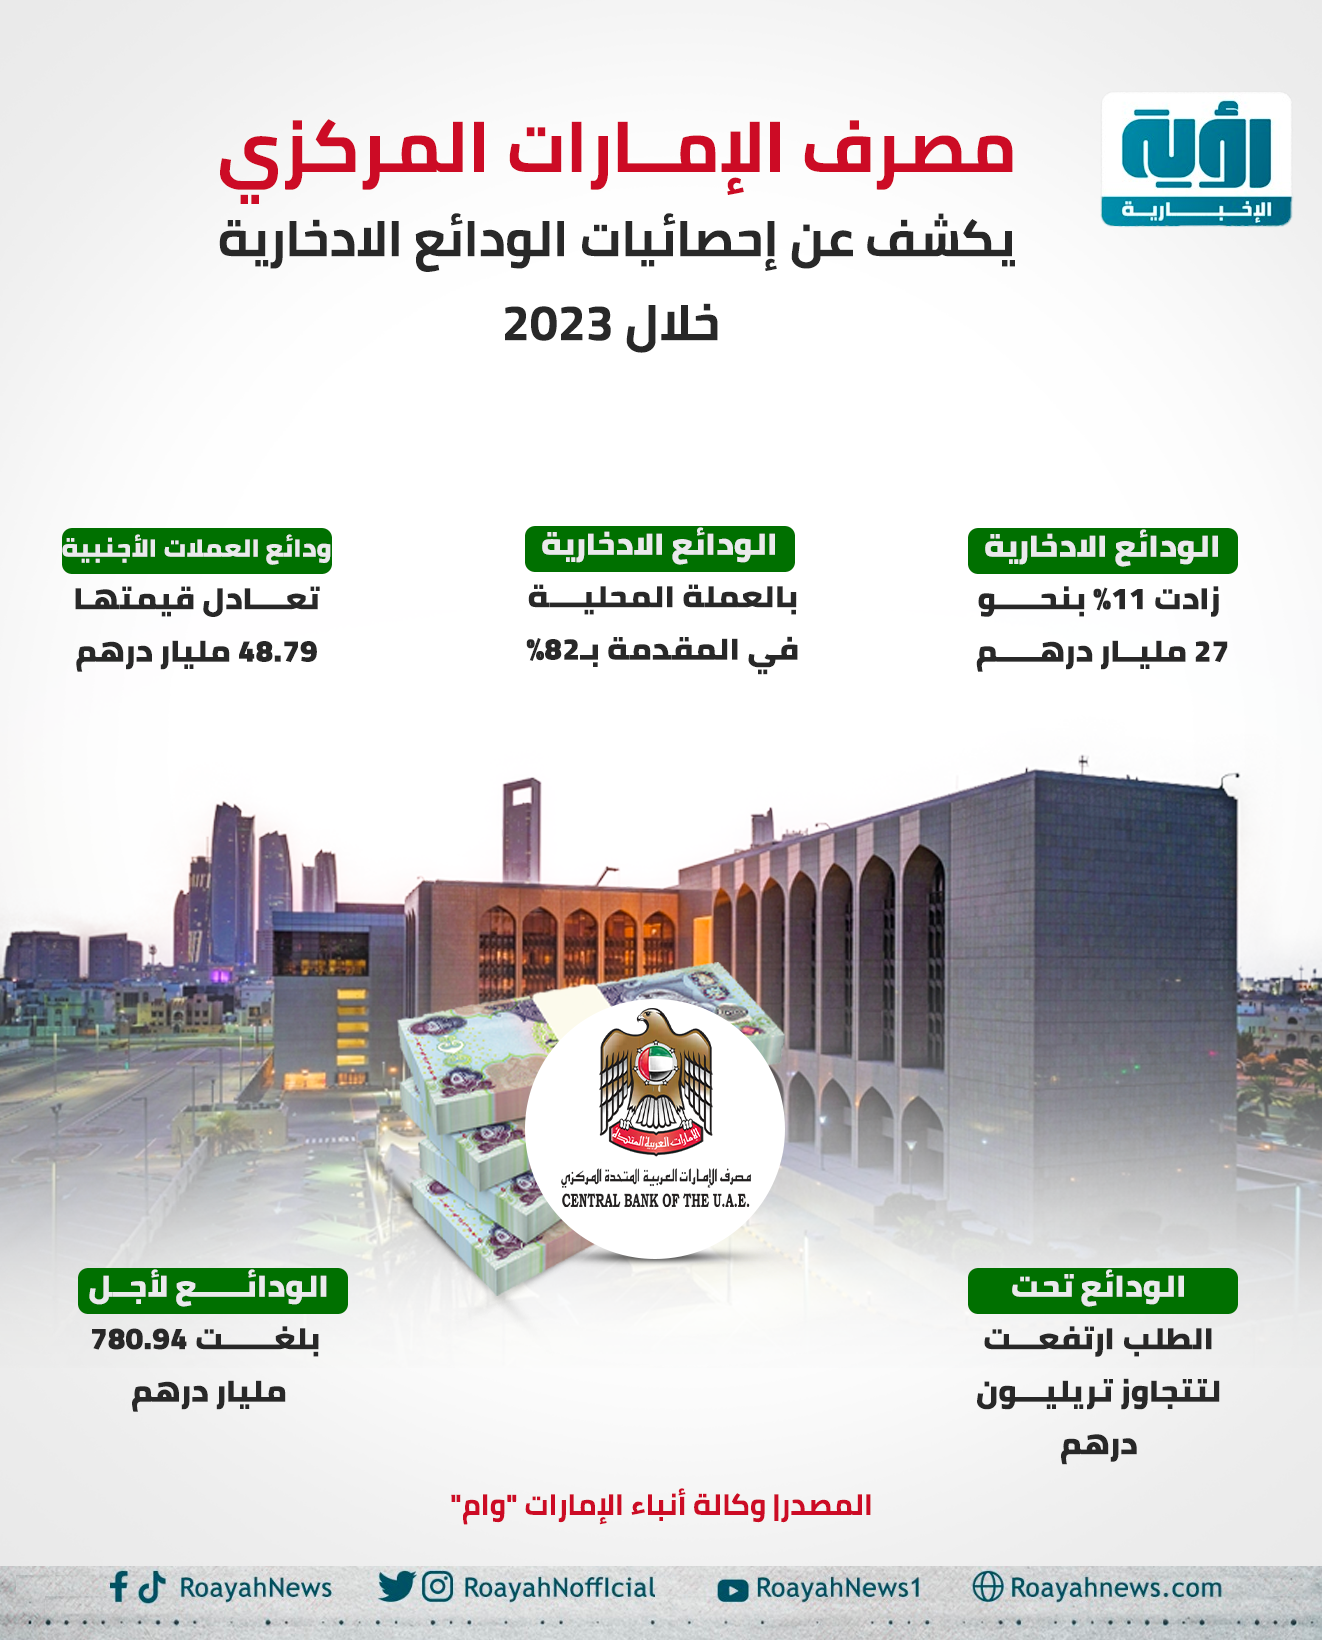 مصرف الإمارات المركزي يكشف عن إحصائيات الودائع الادخارية خلال 2023